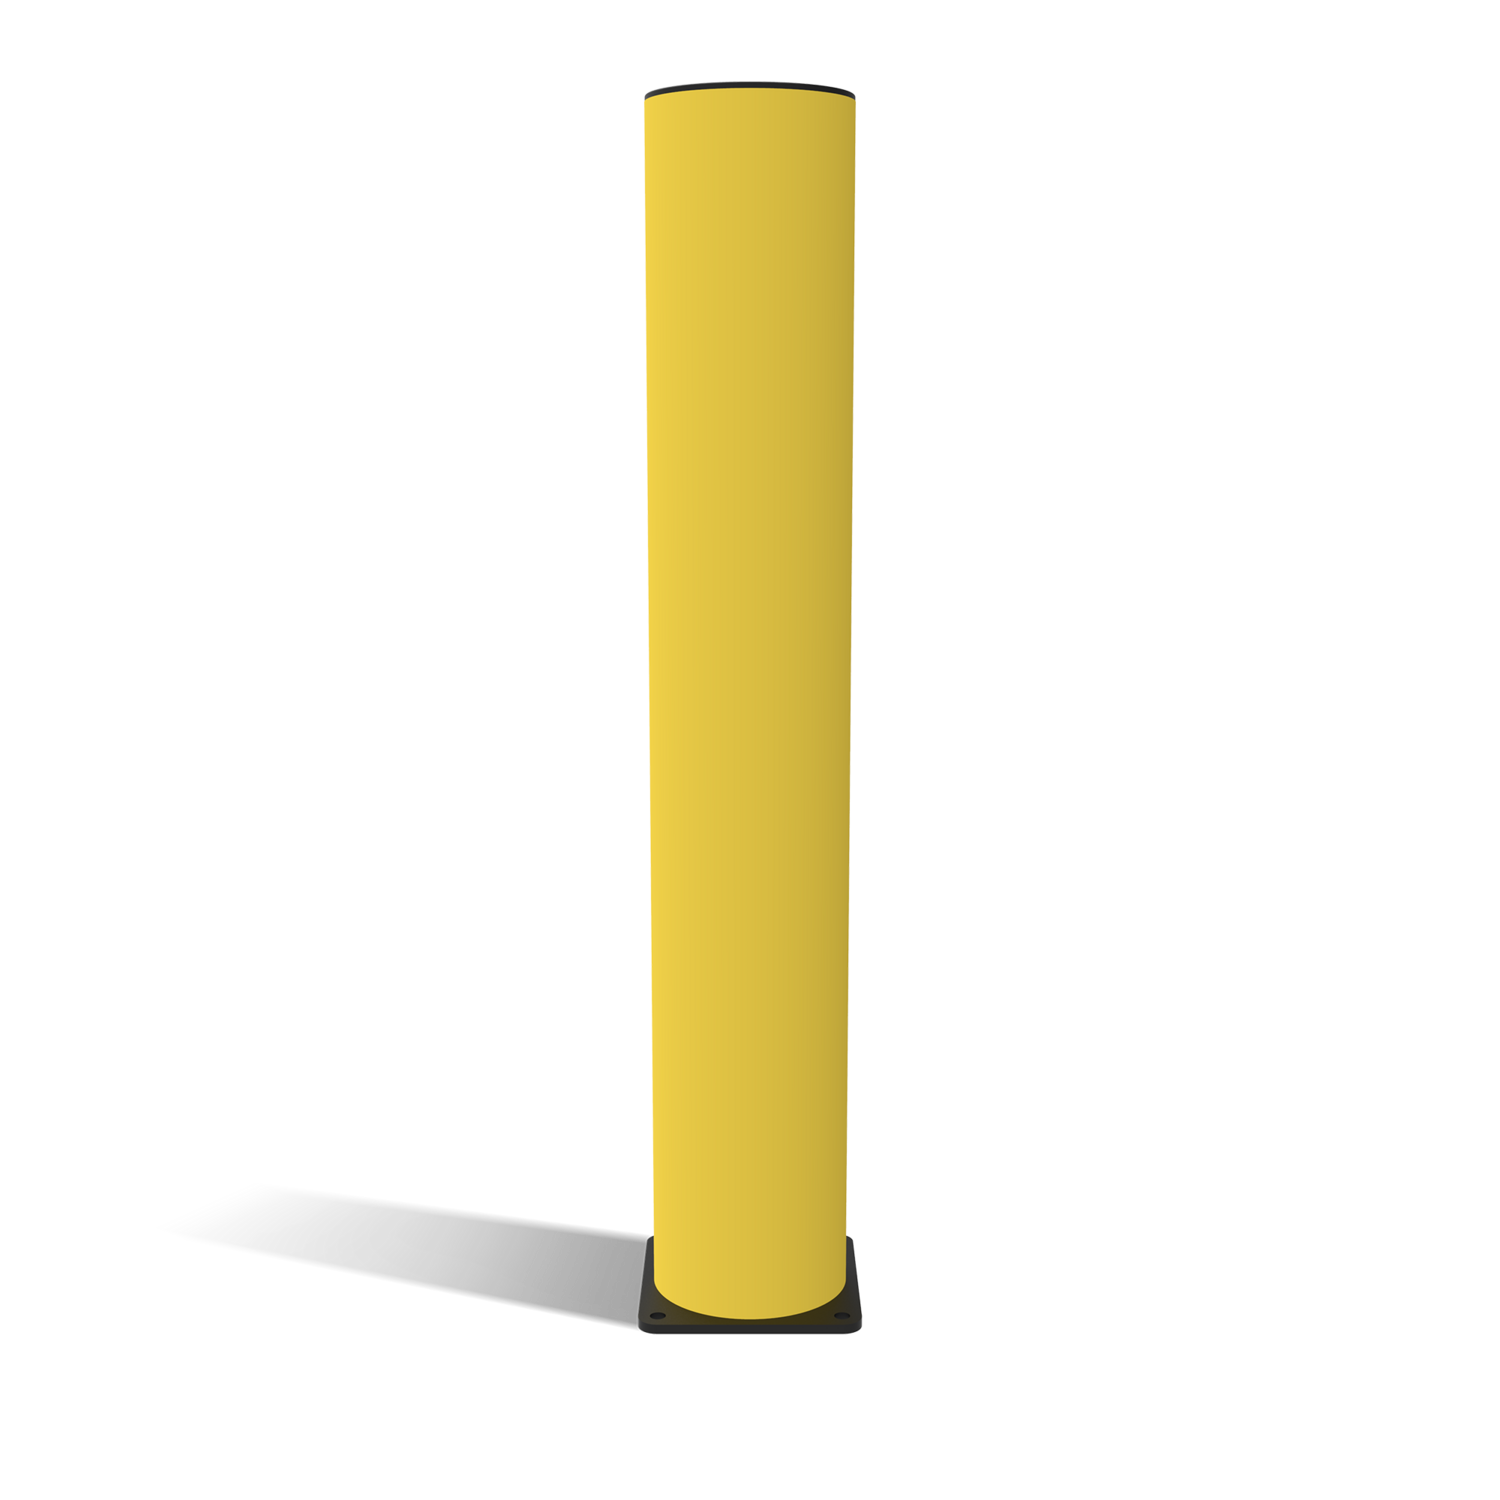 Beschermingspaal kunststof, H1.200 mm, geel/zwart